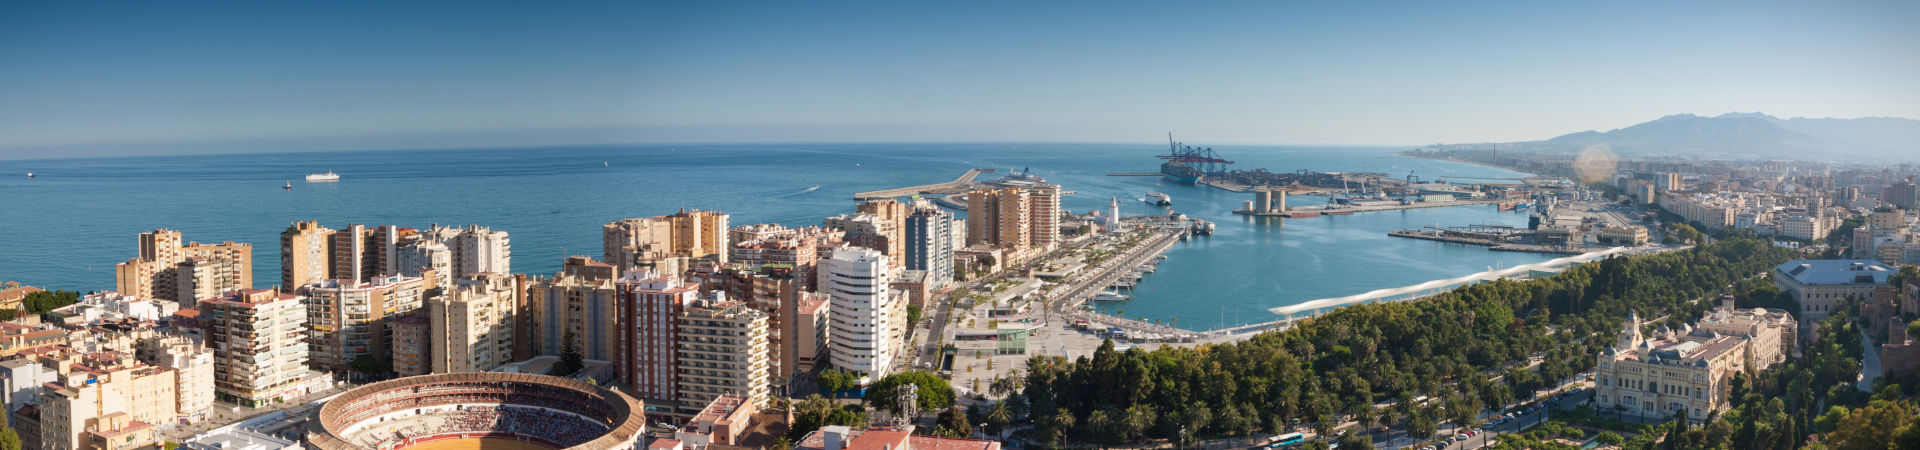 Imatge recurs del port de destinació Màlaga per a la ruta en ferry Melilla - Màlaga